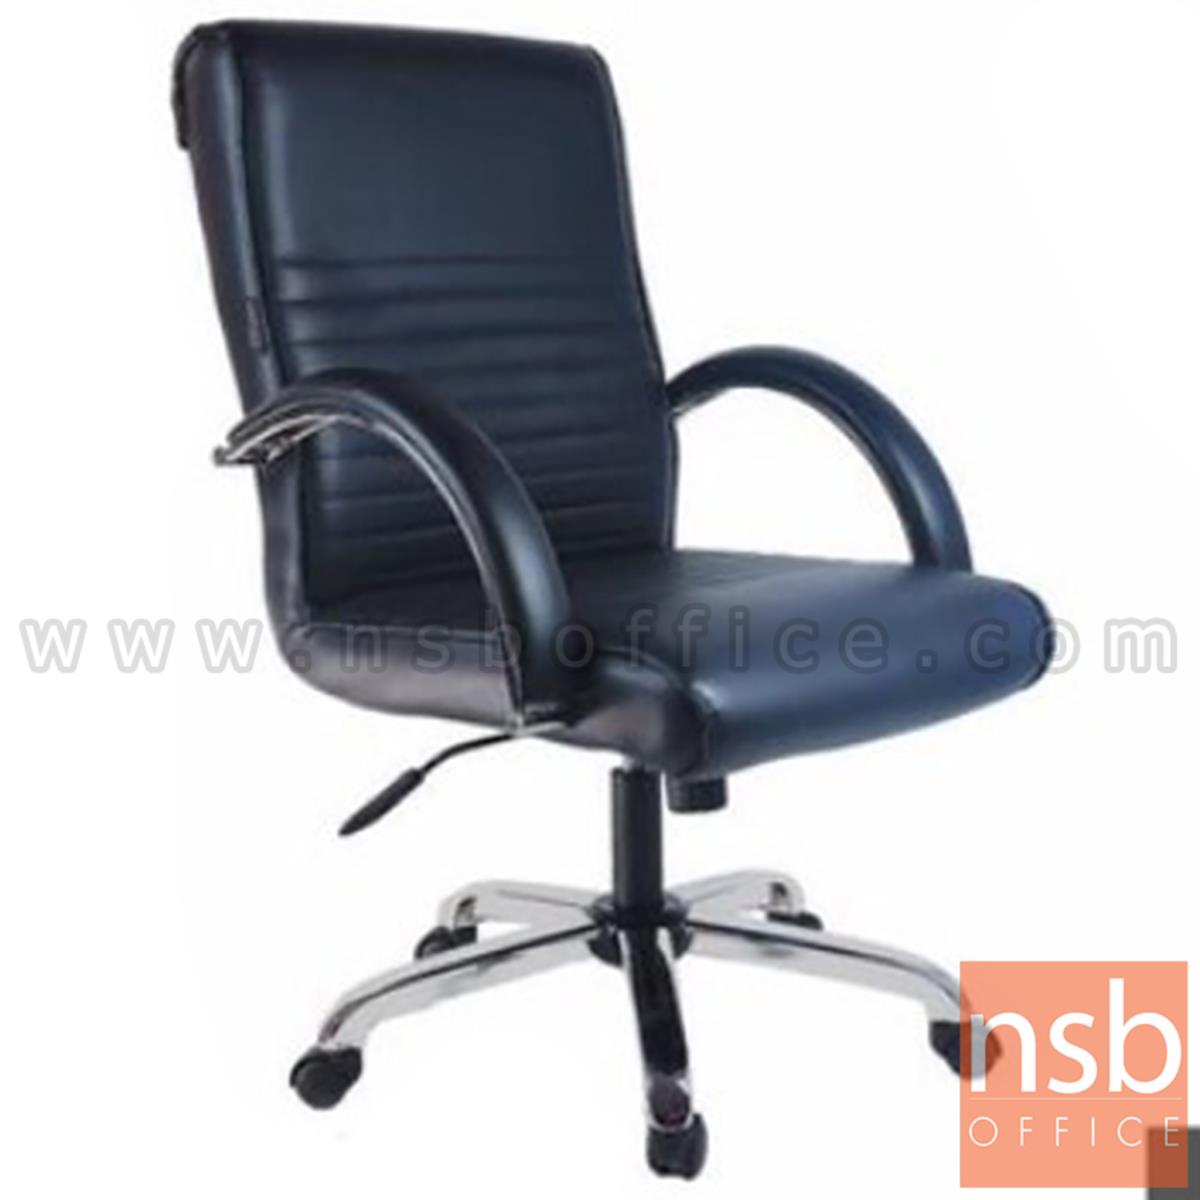 B26A138:เก้าอี้สำนักงาน รุ่น Calentha (คาเรนธ่า)  โช๊คแก๊ส มีก้อนโยก ขาเหลี่ยมชุบโครเมี่ยม